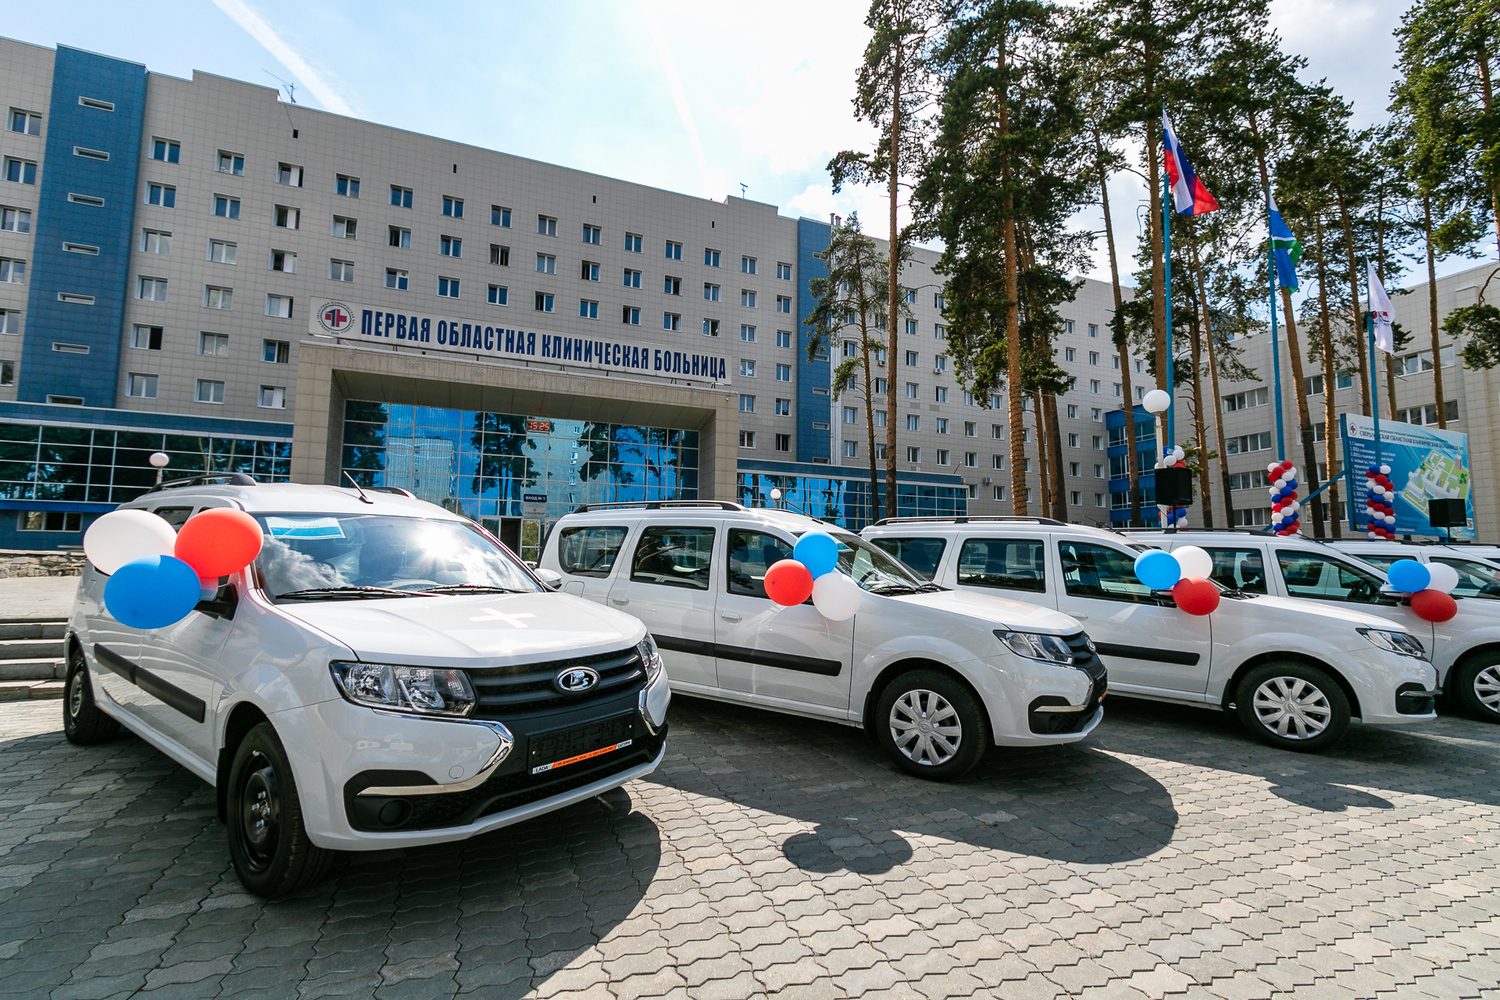 Евгений Куйвашев передал больницам региона новые санитарные автомобили, которые сделают медпомощь уральцам ещё доступнее <br>